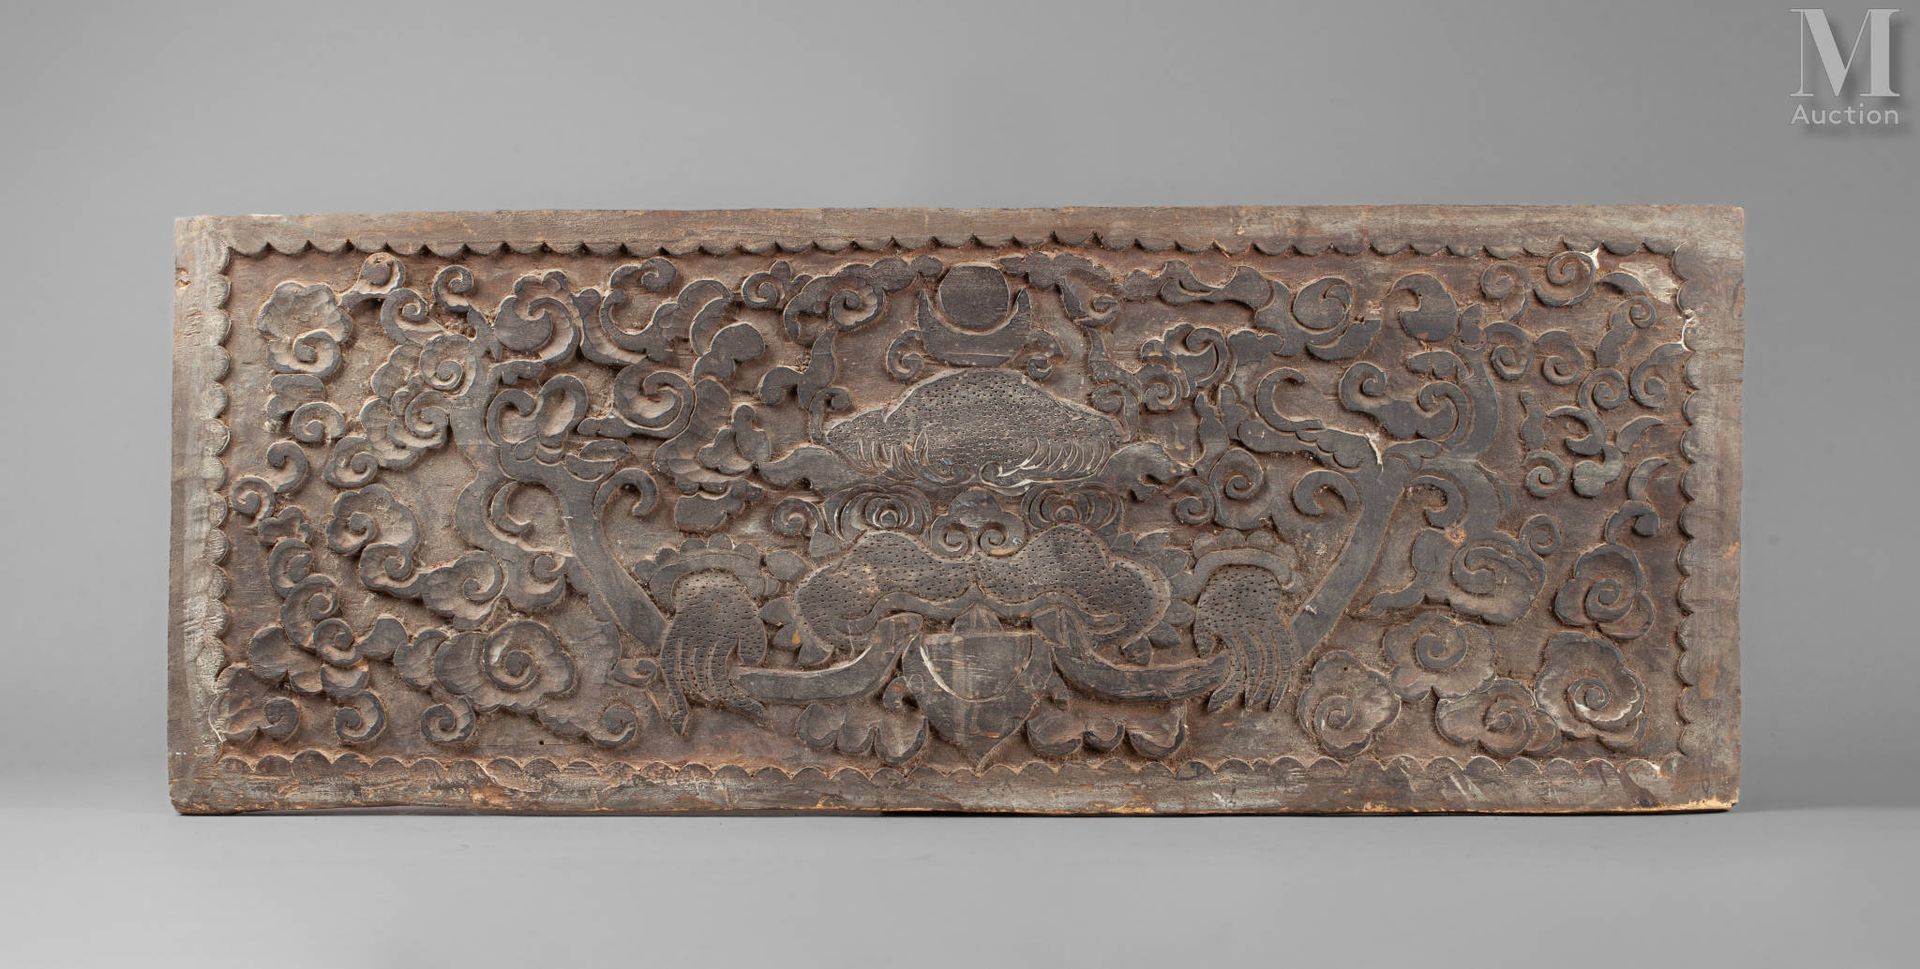 Panneau décoratif Il legno
Nepal
33 x 86 x 2 cm